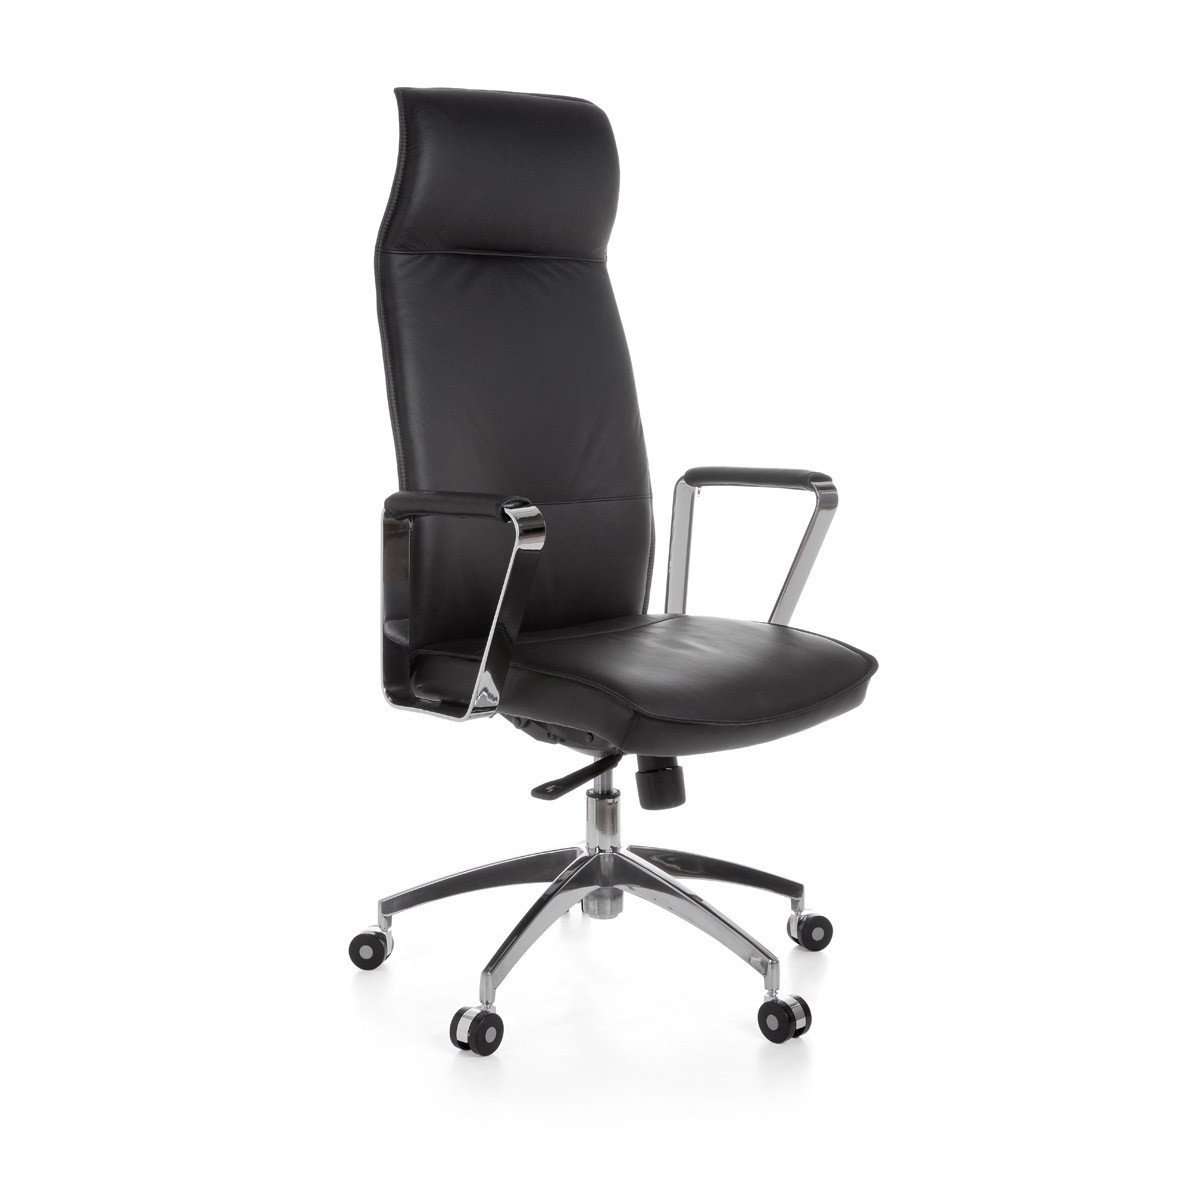 Chaise de bureau en cuir Williamsbridge de Nancy - Chaise de bureau ergonomique noire - Chaises de bureau pour adultes